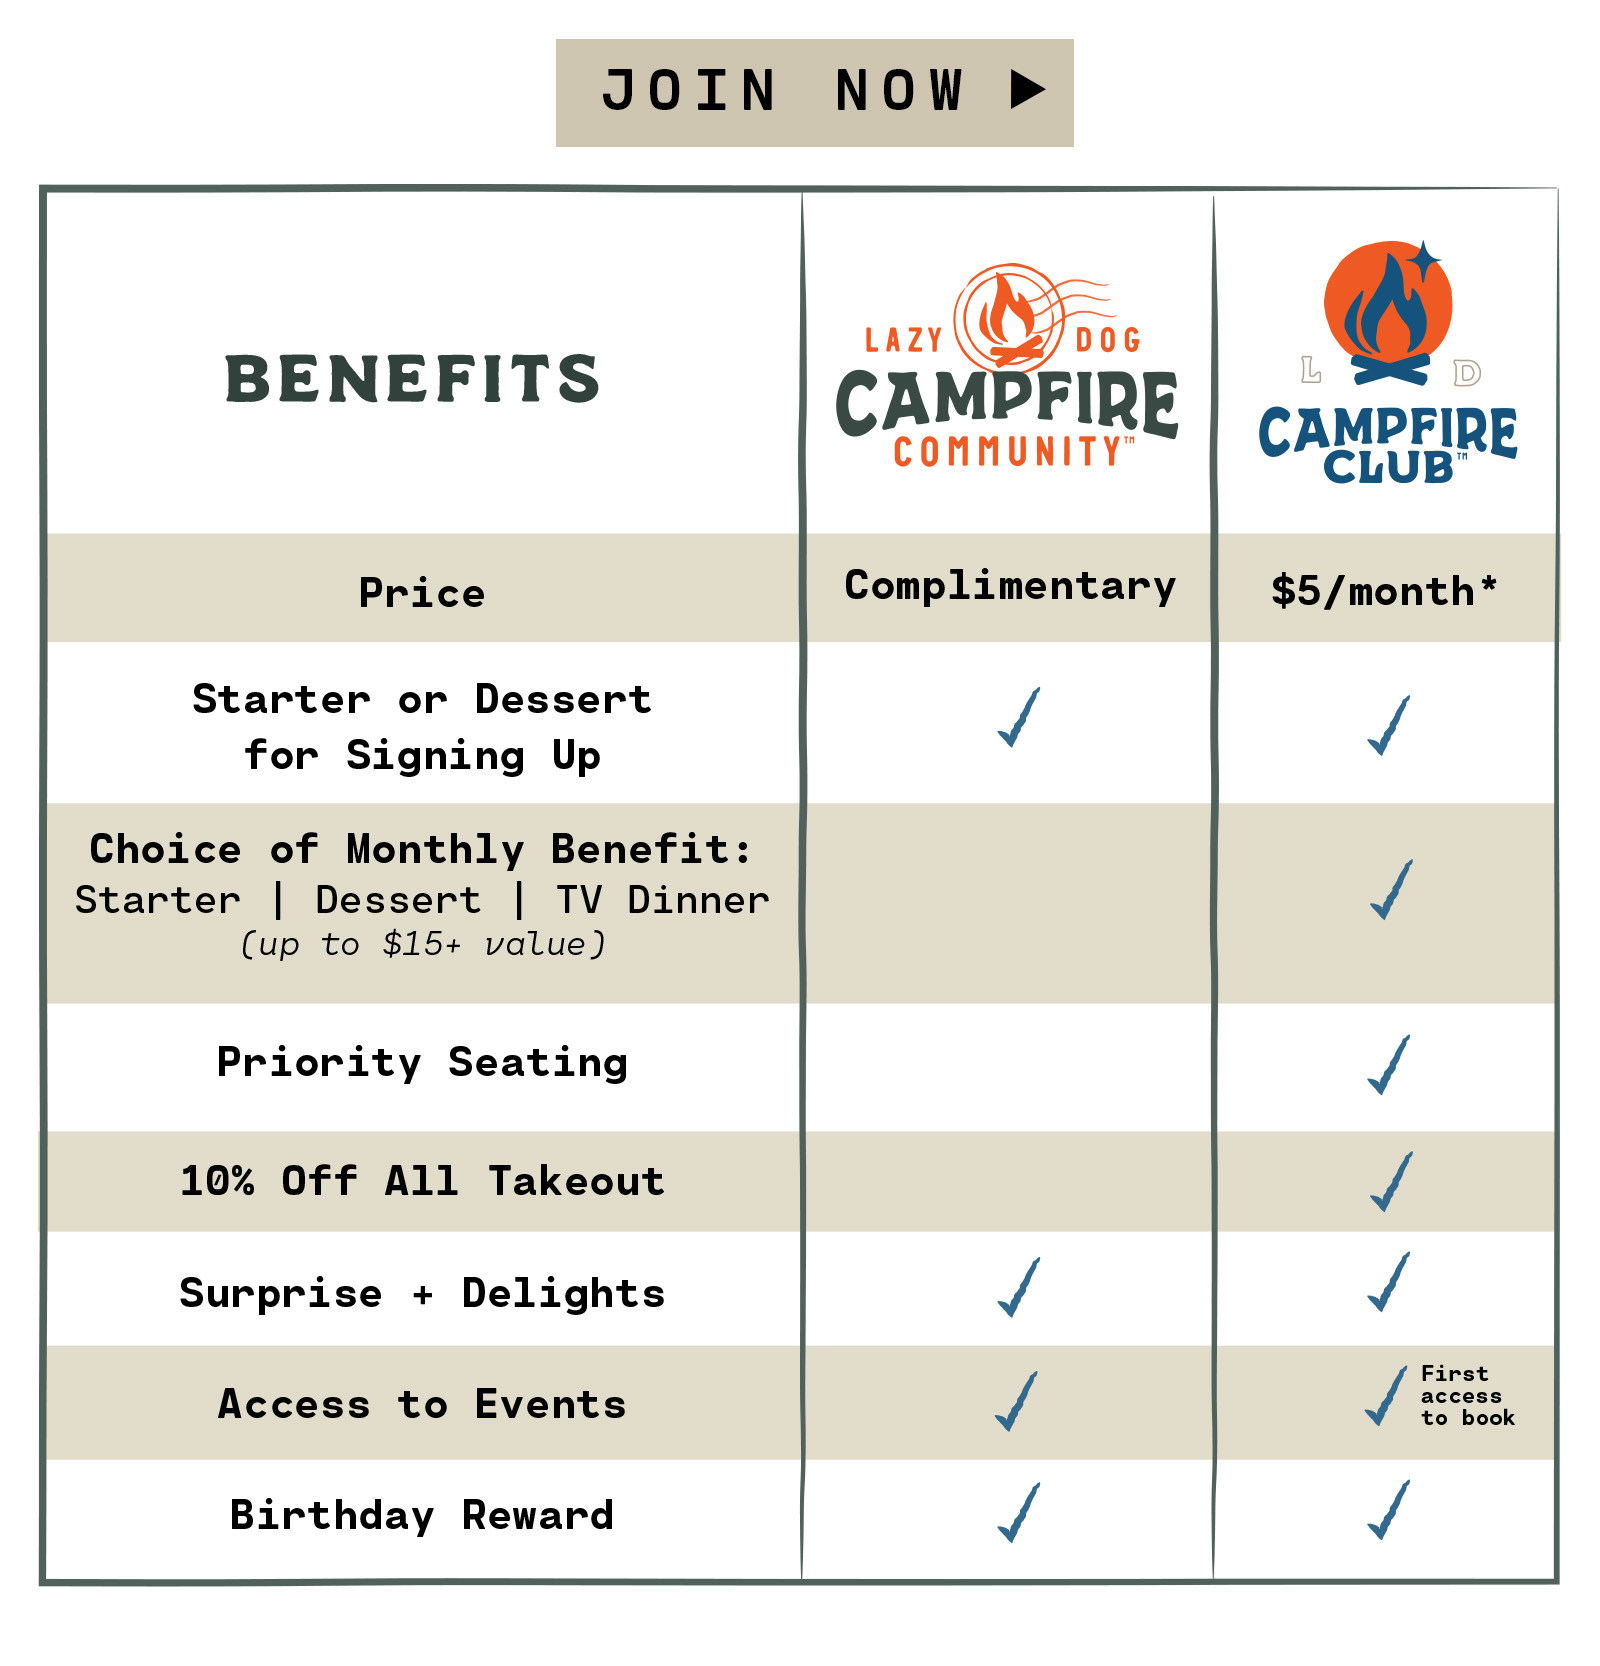 Campfire Community vs. Campfire Club Benefits Comparison